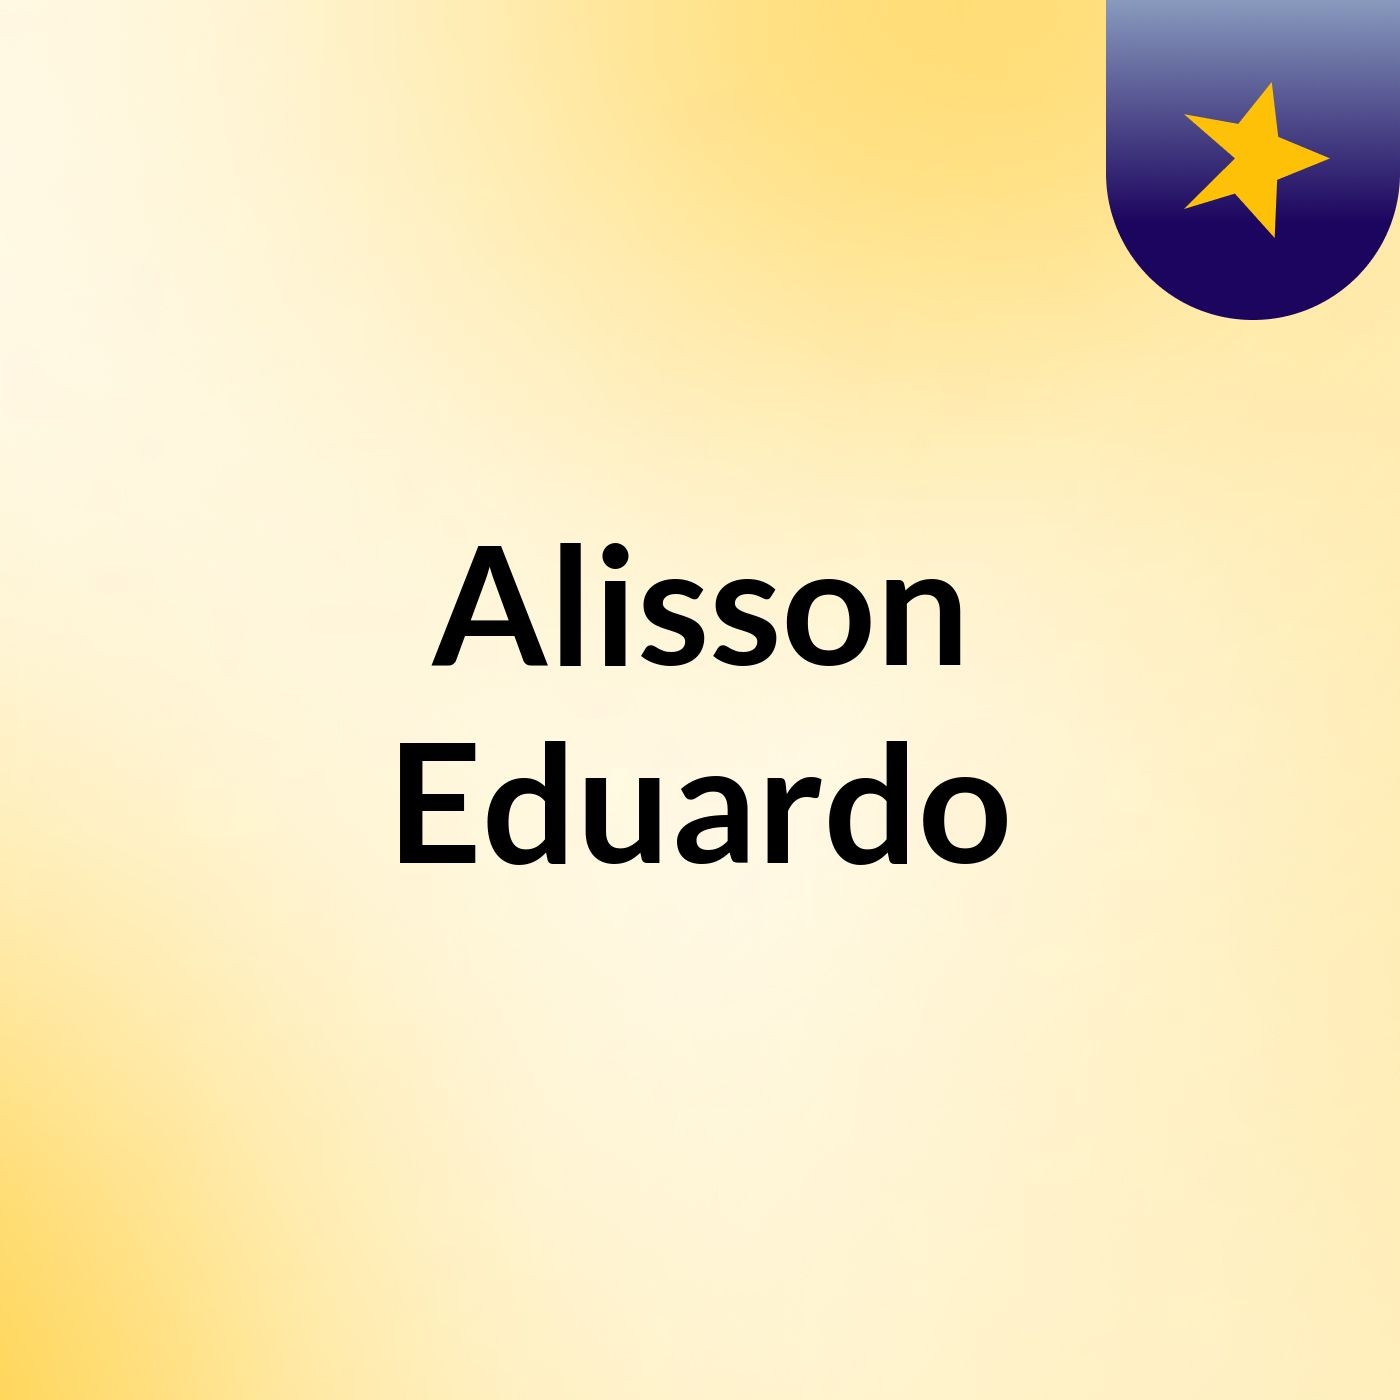 Alisson Eduardo